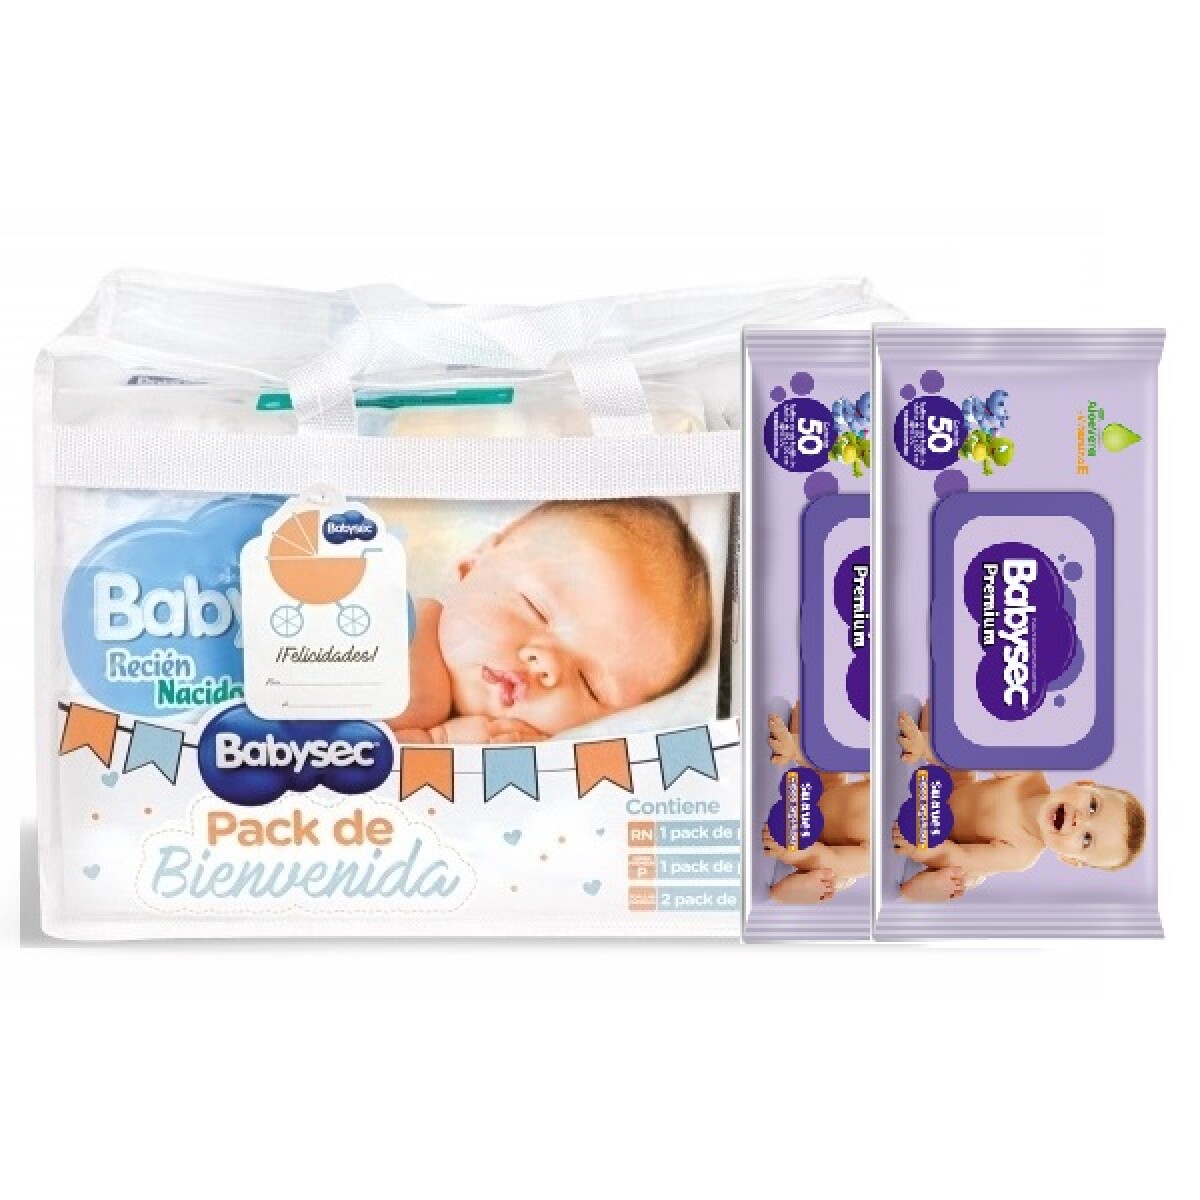 Pack De Bienvenida Babysec Recién Nacido — Farmacia El túnel